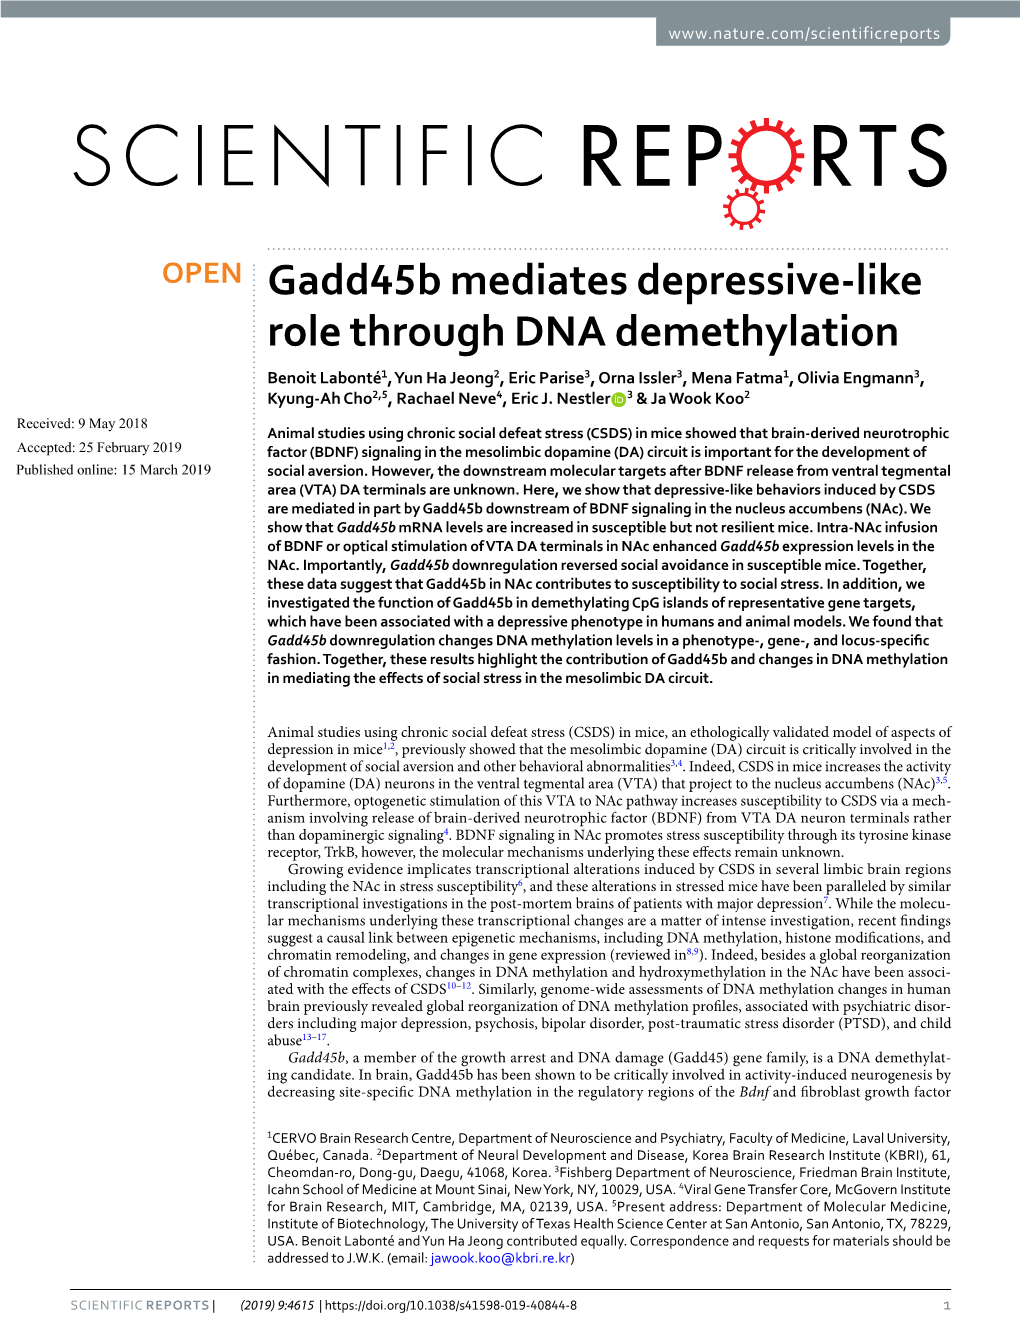 Gadd45b Mediates Depressive-Like Role Through DNA Demethylation